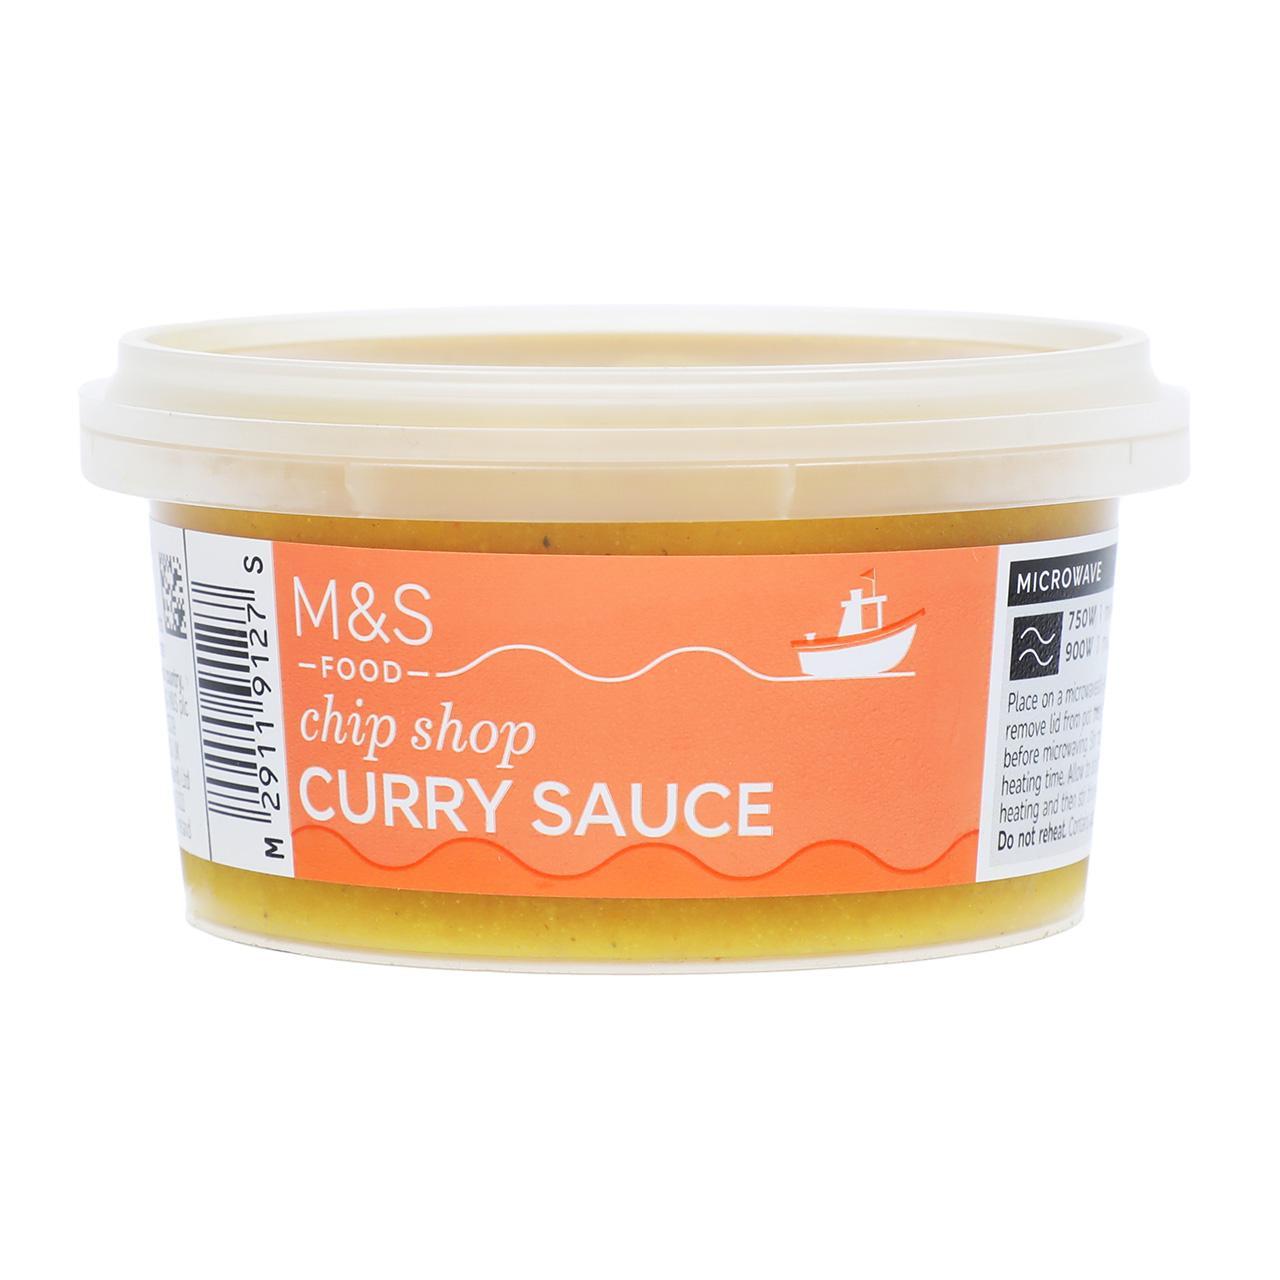 M&S Chip Shop Curry Sauce